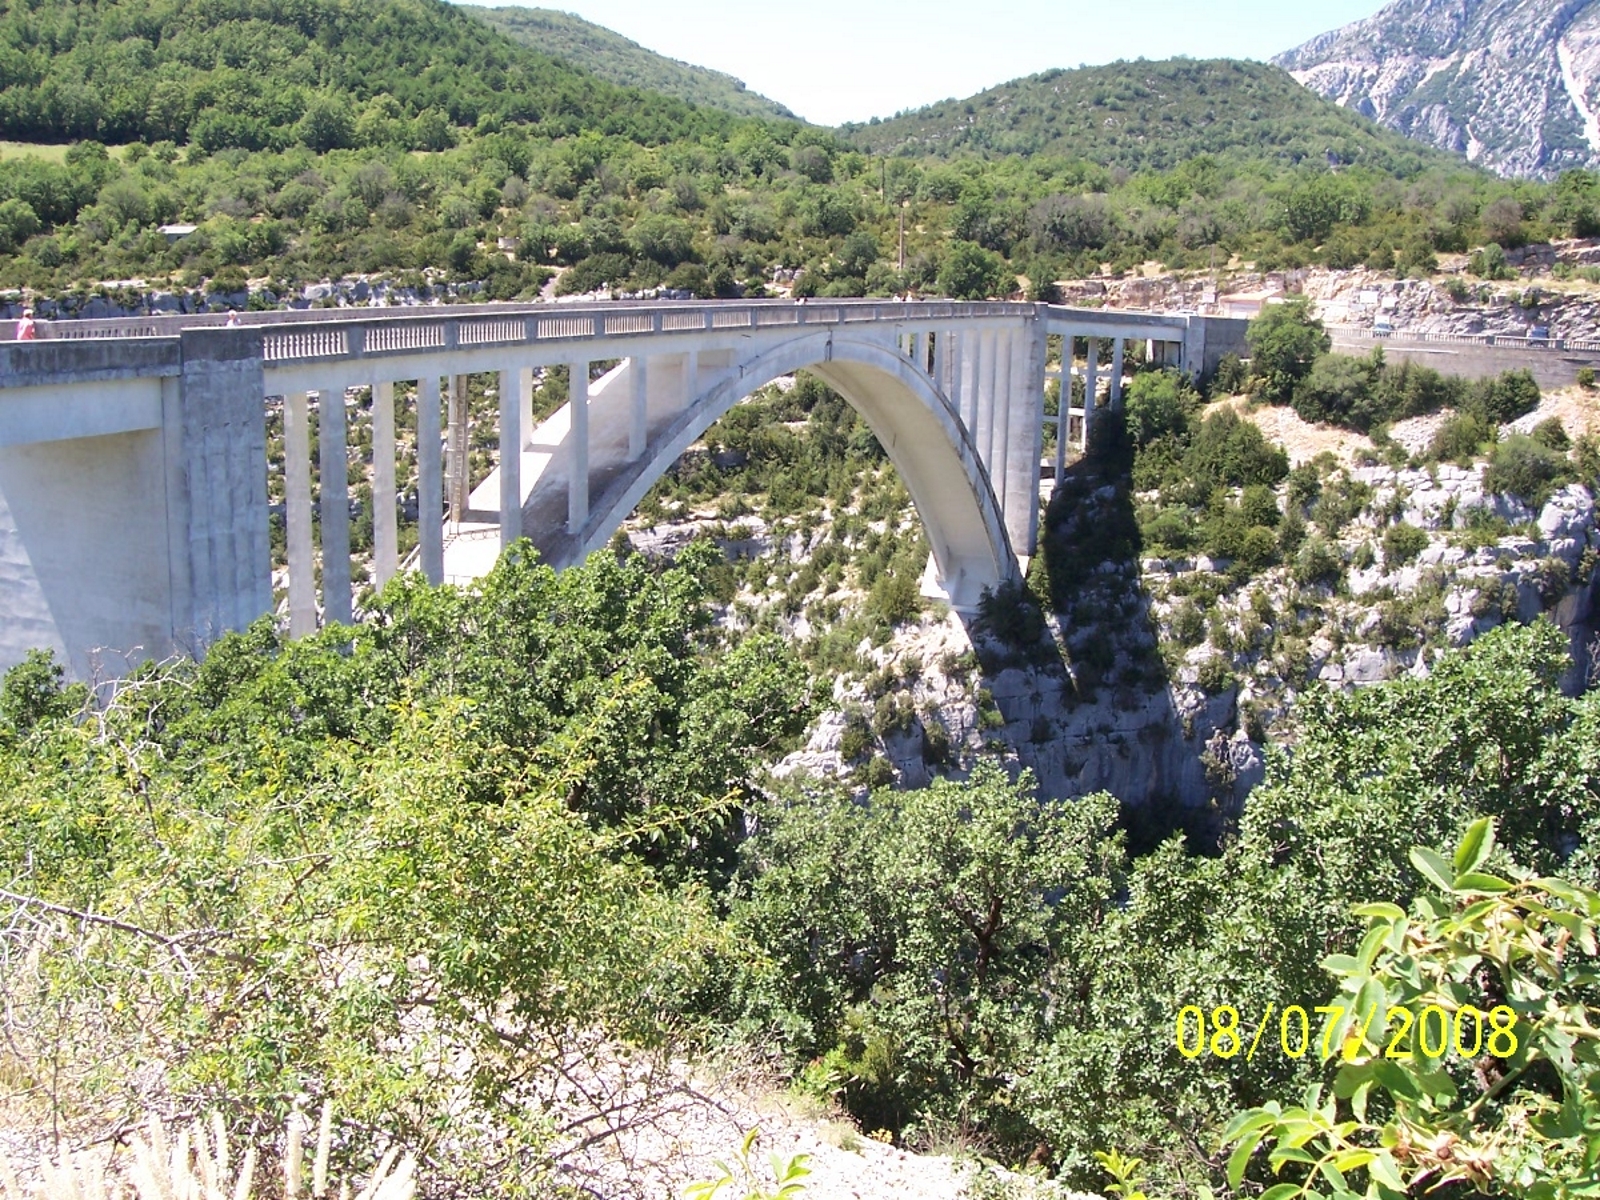 Vue générale - Pont de l'Artuby